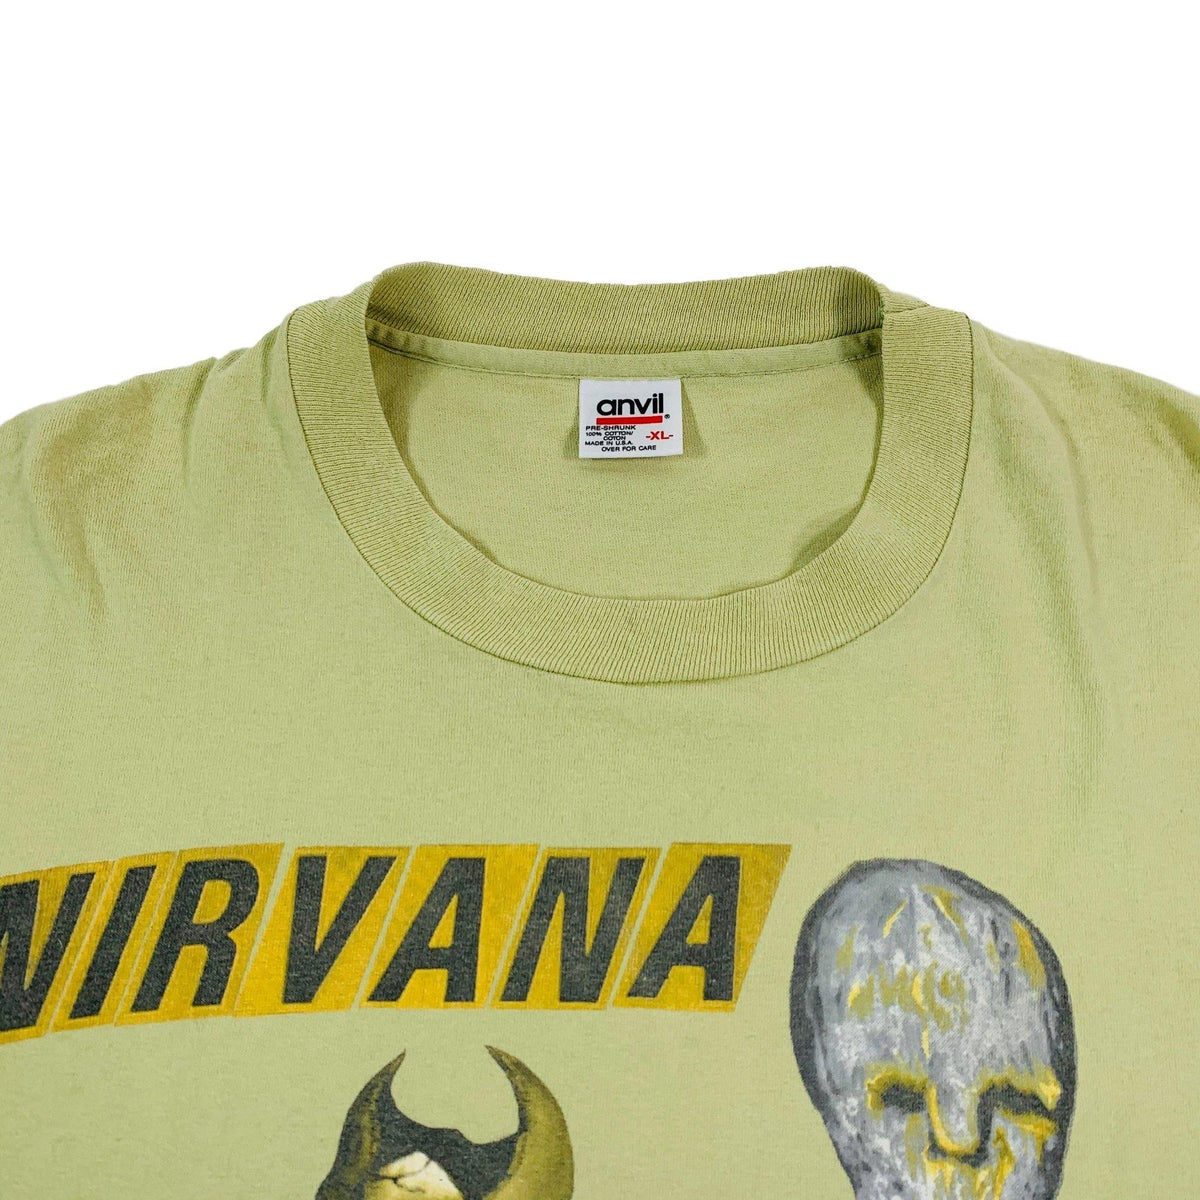 Vintage Nirvana &quot;Incesticide&quot; T-Shirt - jointcustodydc